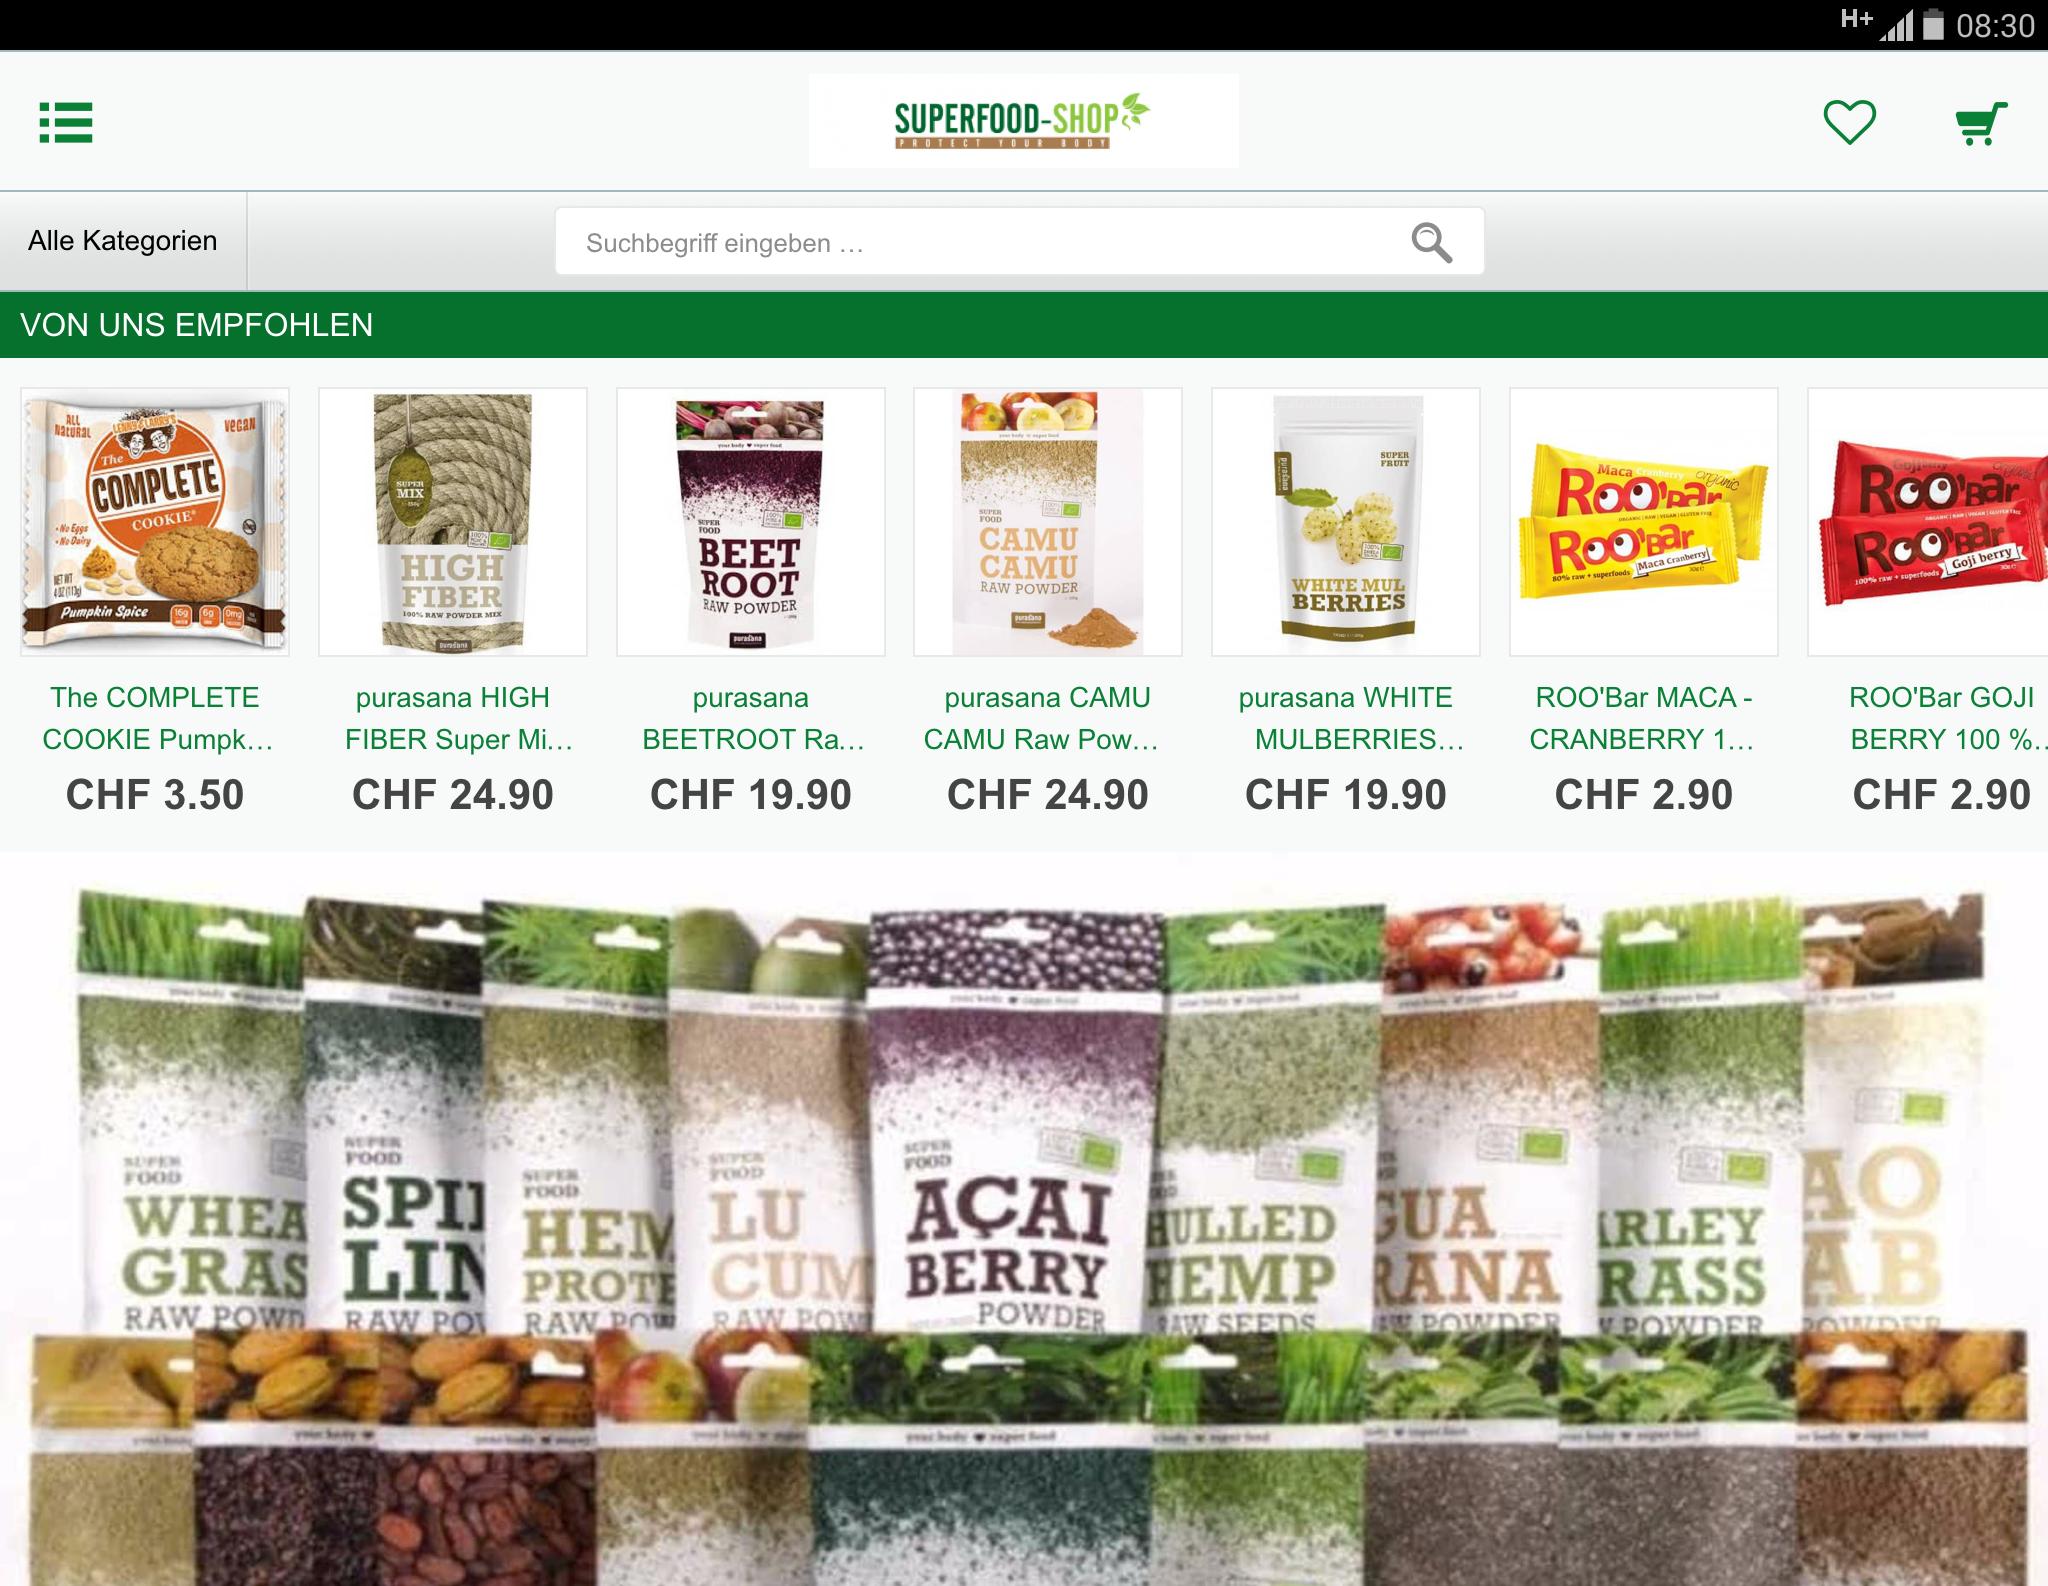 Zich voorstellen metaal schuld Superfood-Shop for Android - APK Download